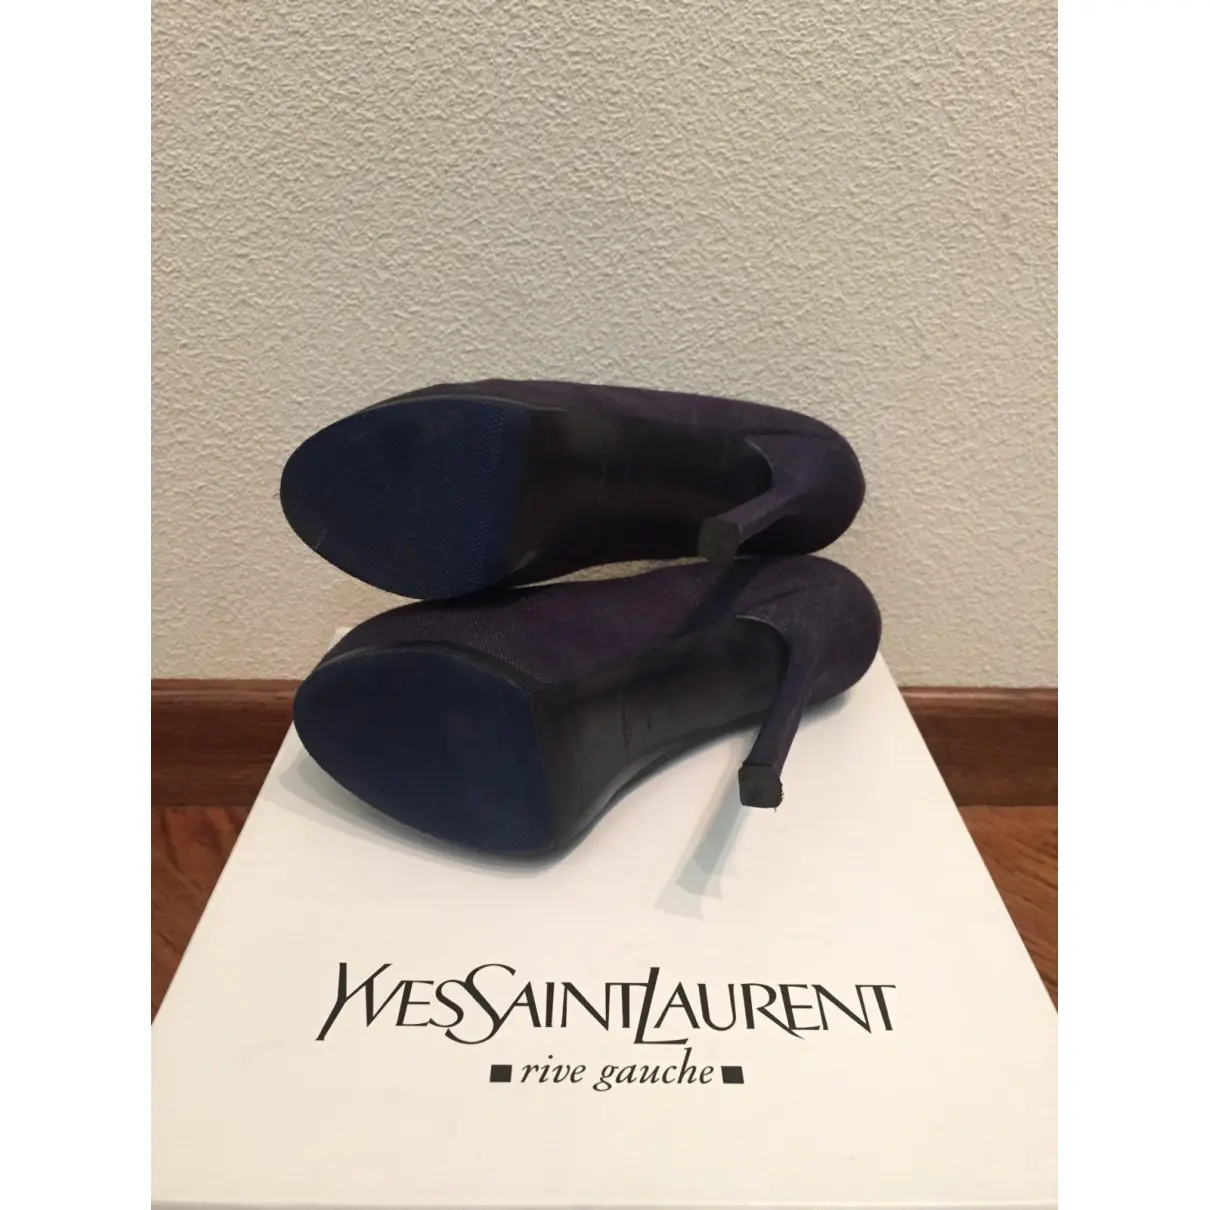 Luxury Yves Saint Laurent Heels Women - Vintage